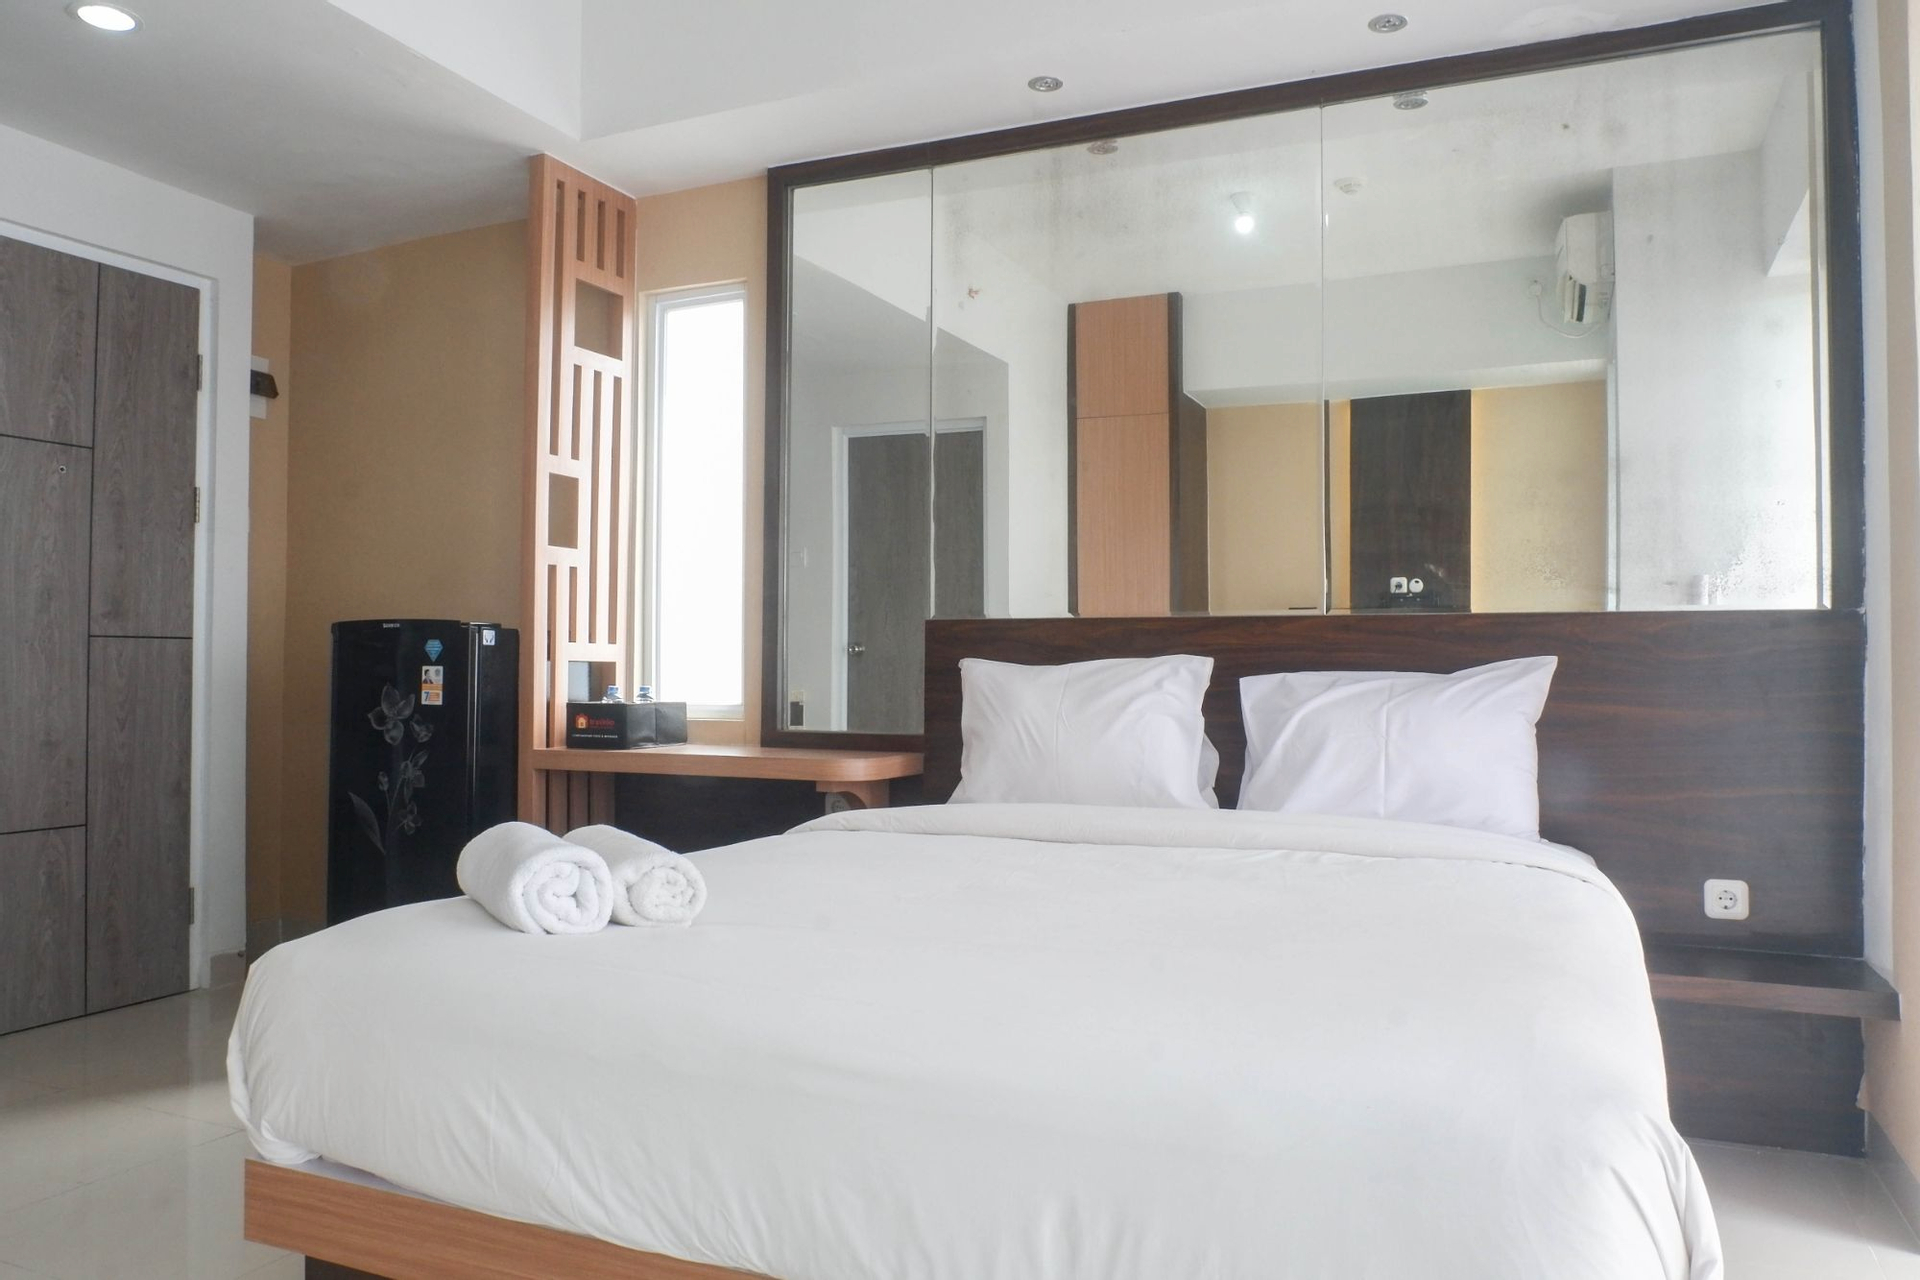 Bedroom 4, Best Choice Studio Apartment at Taman Melati Surabaya By Travelio, Surabaya